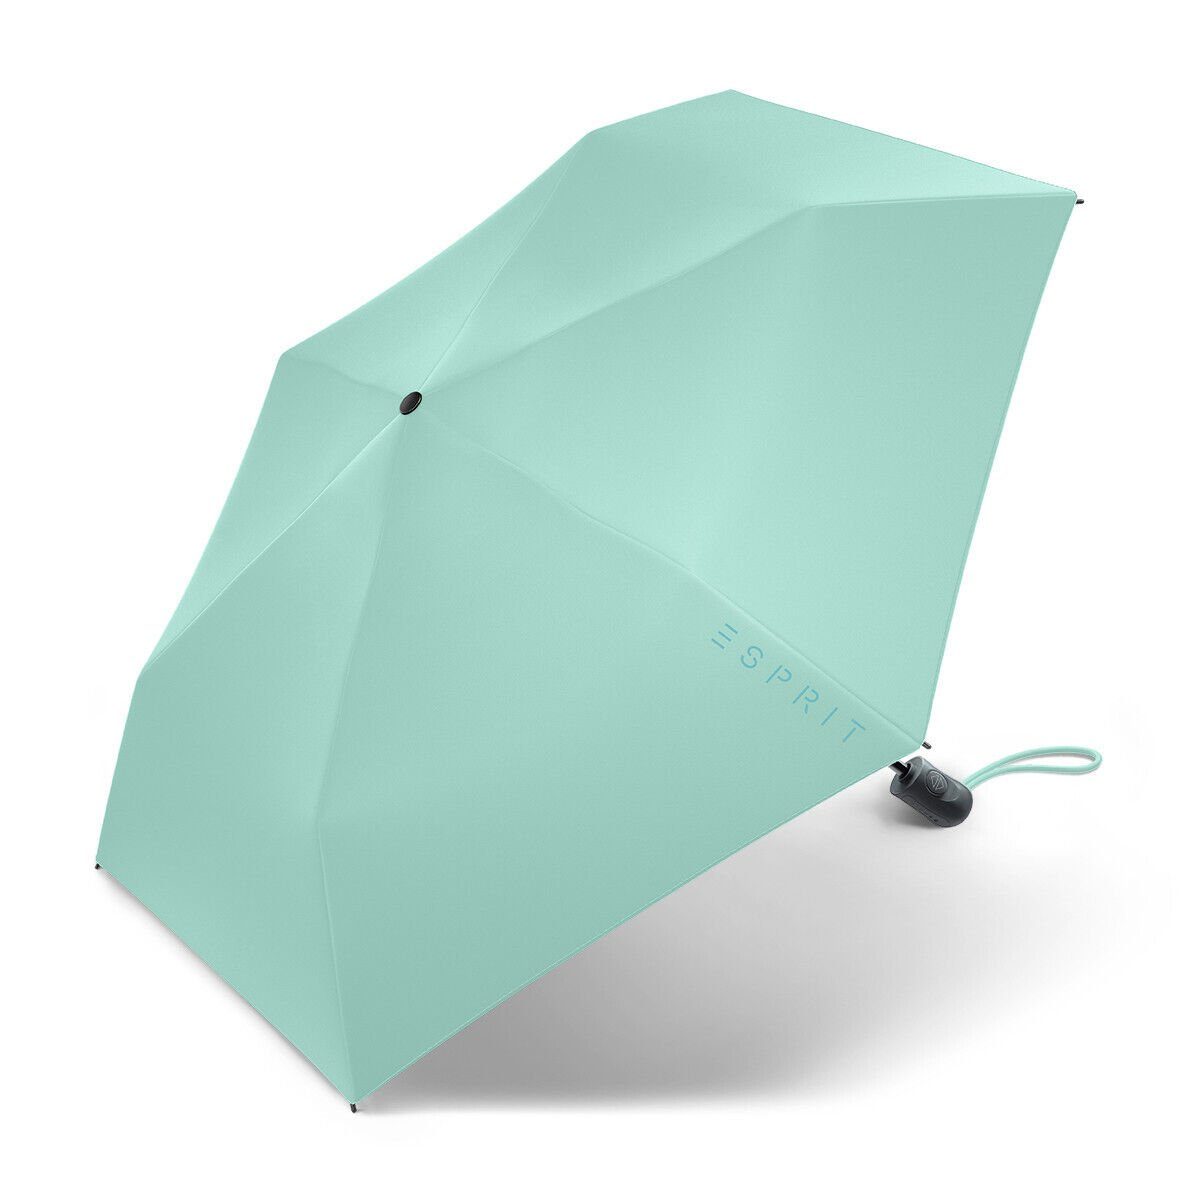 Esprit Taschenregenschirm